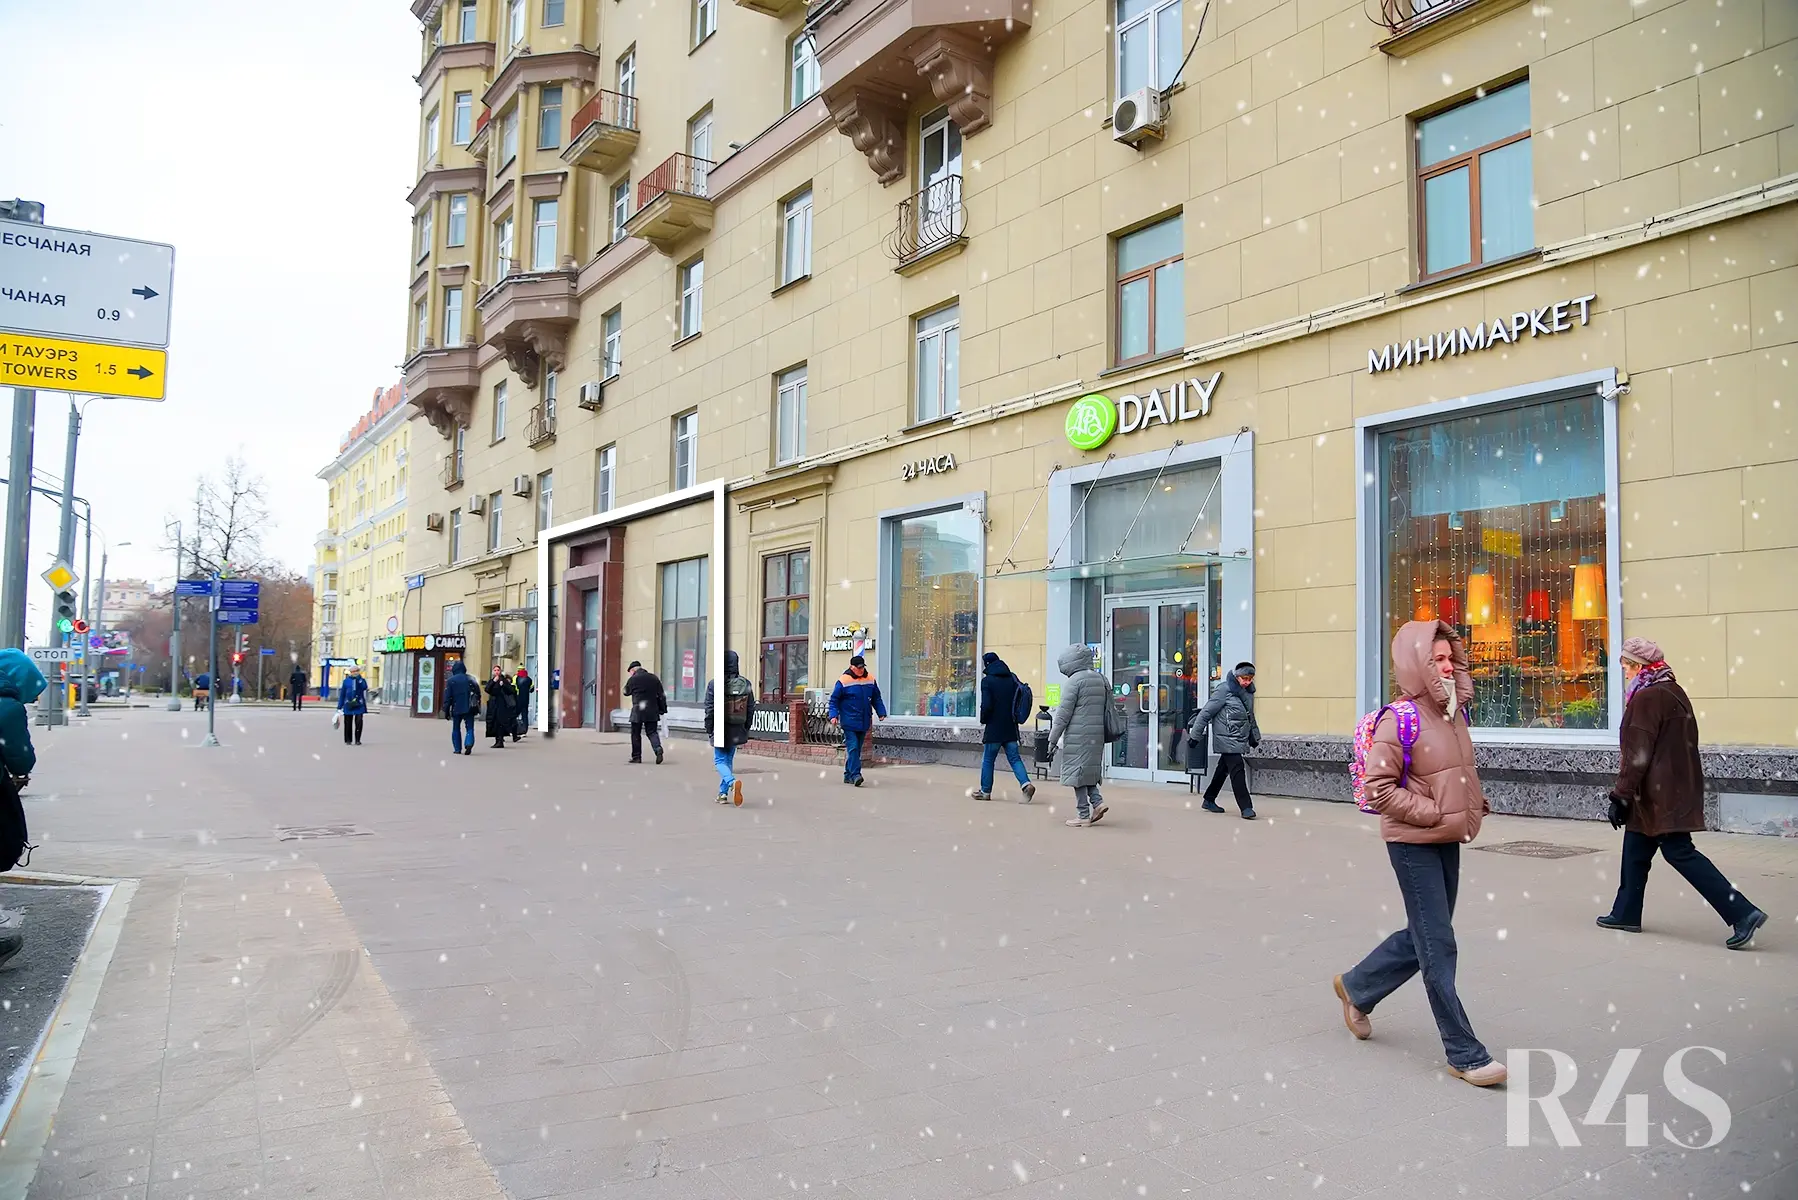 Аренда торгового помещения площадью 86.5 м2 в Москве: Ленинградский проспект, 69с1 R4S | Realty4Sale